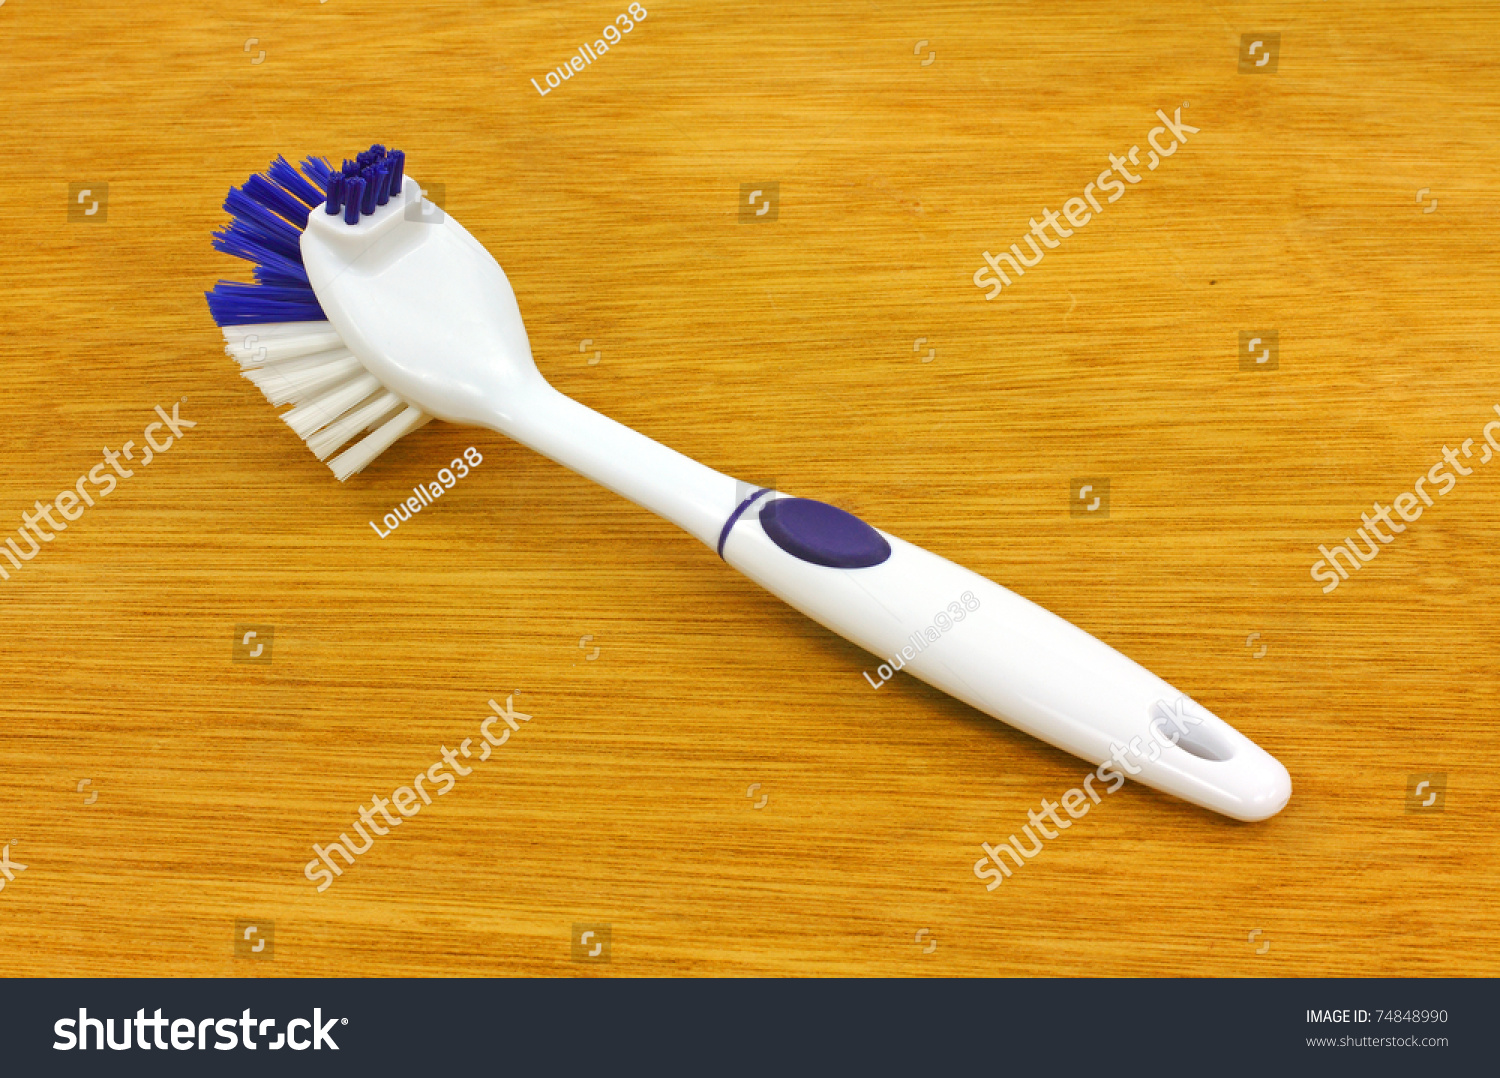 dish scrub brush